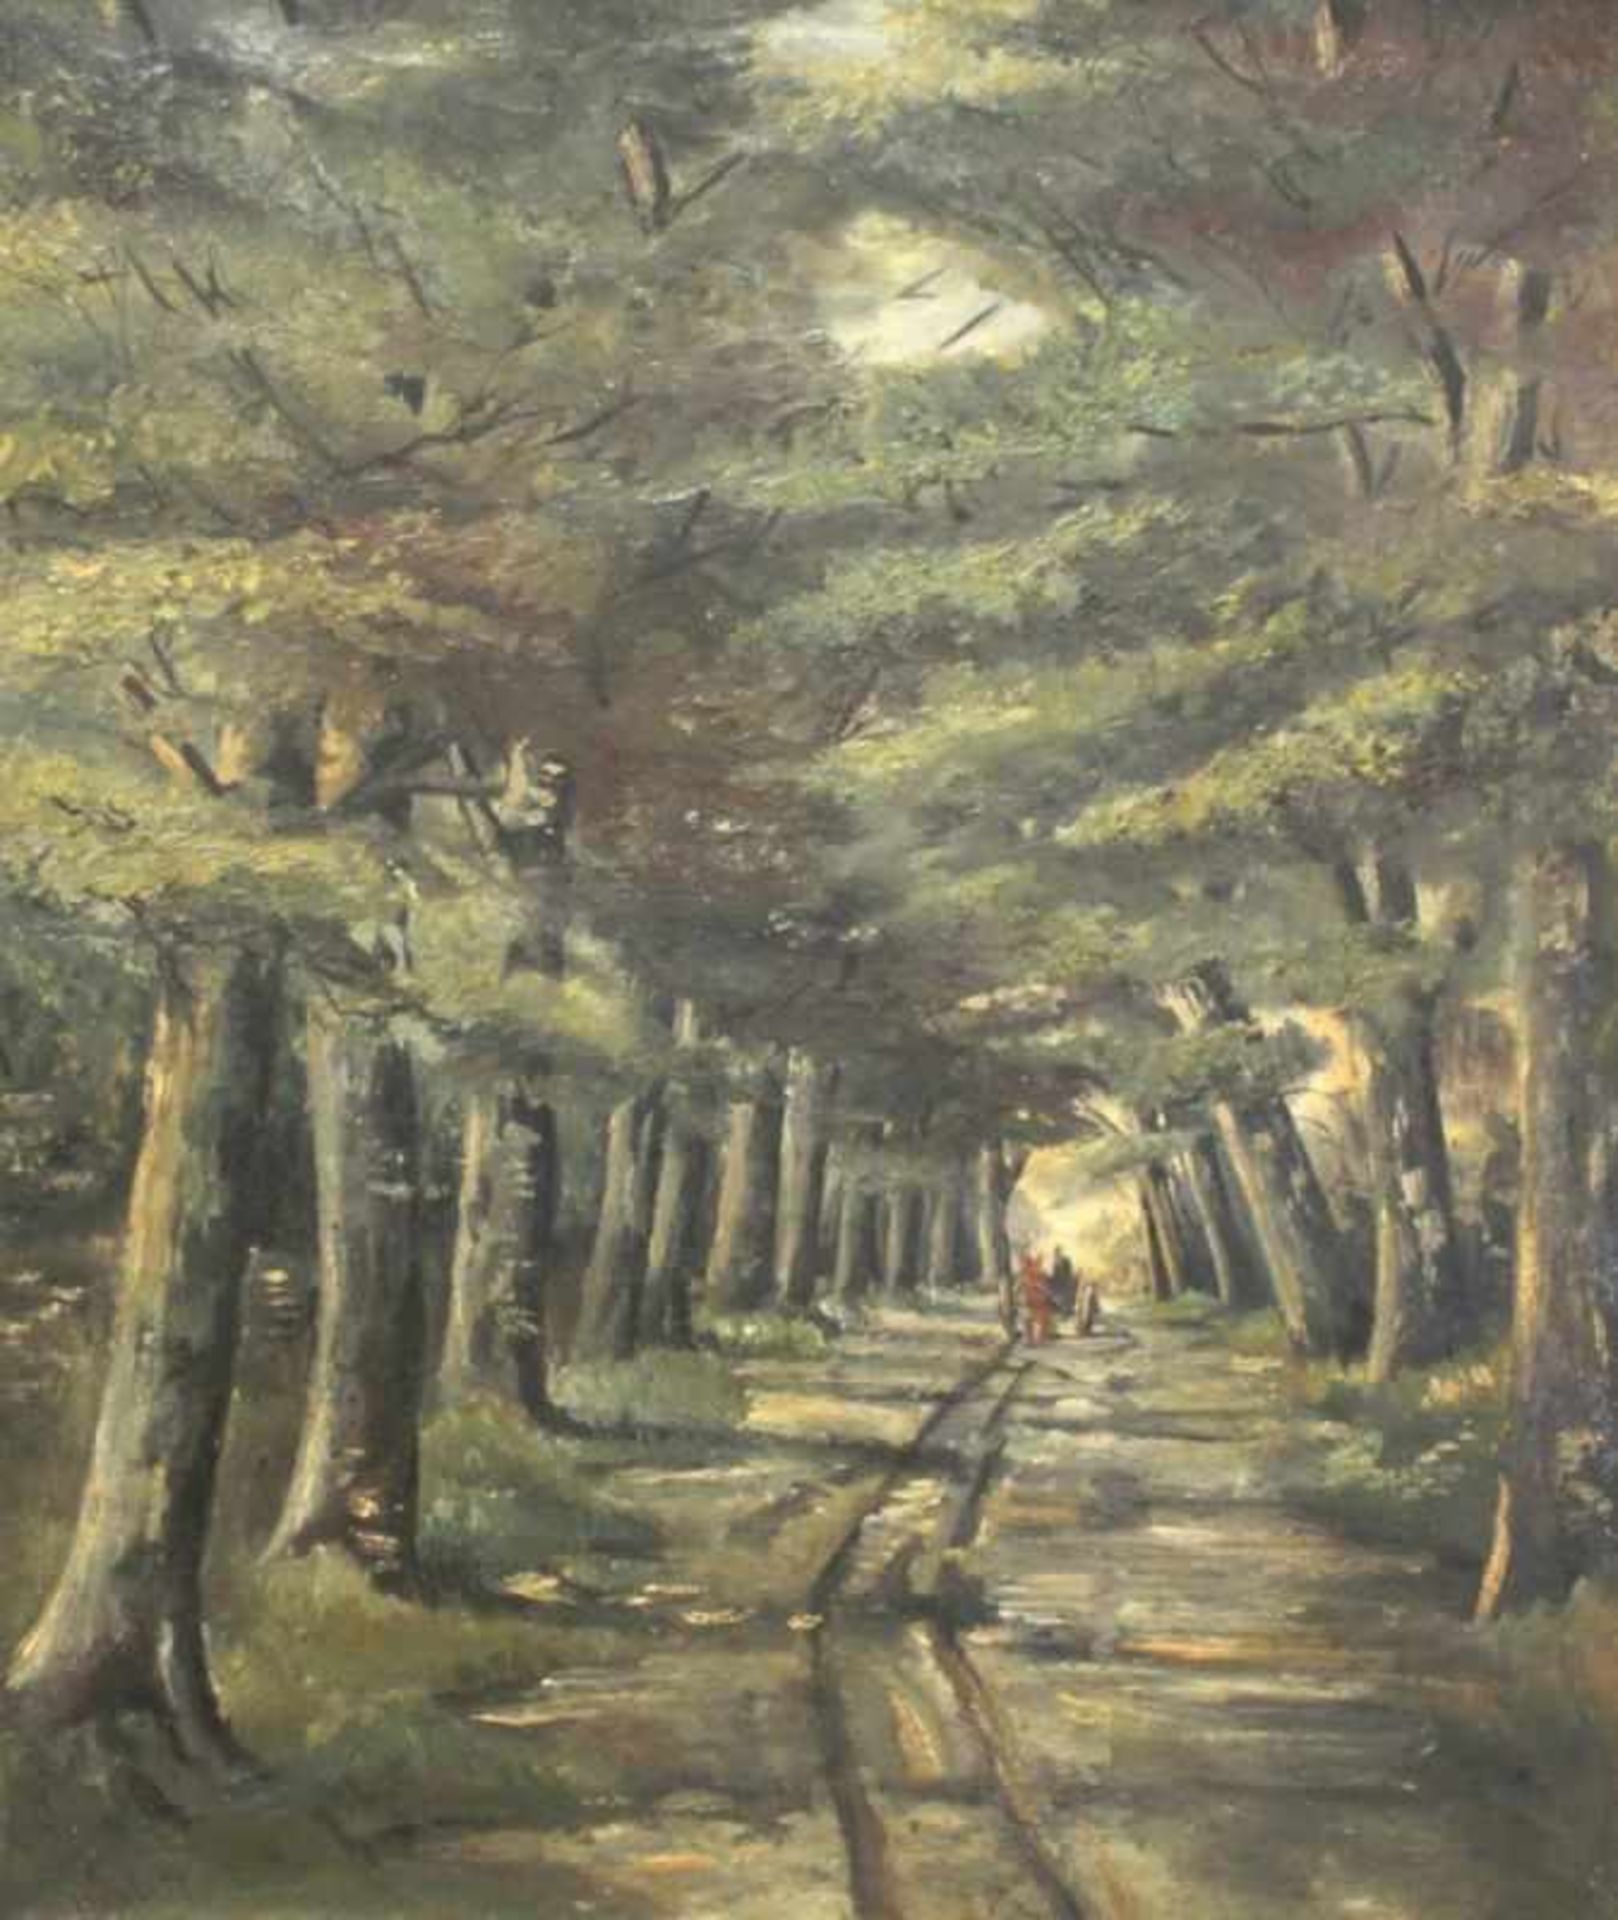 Unleserlich signierender Maler, Mitte 20. Jh. "Fahrt durch den Wald", Öl/Lw., 60 x 50 cm